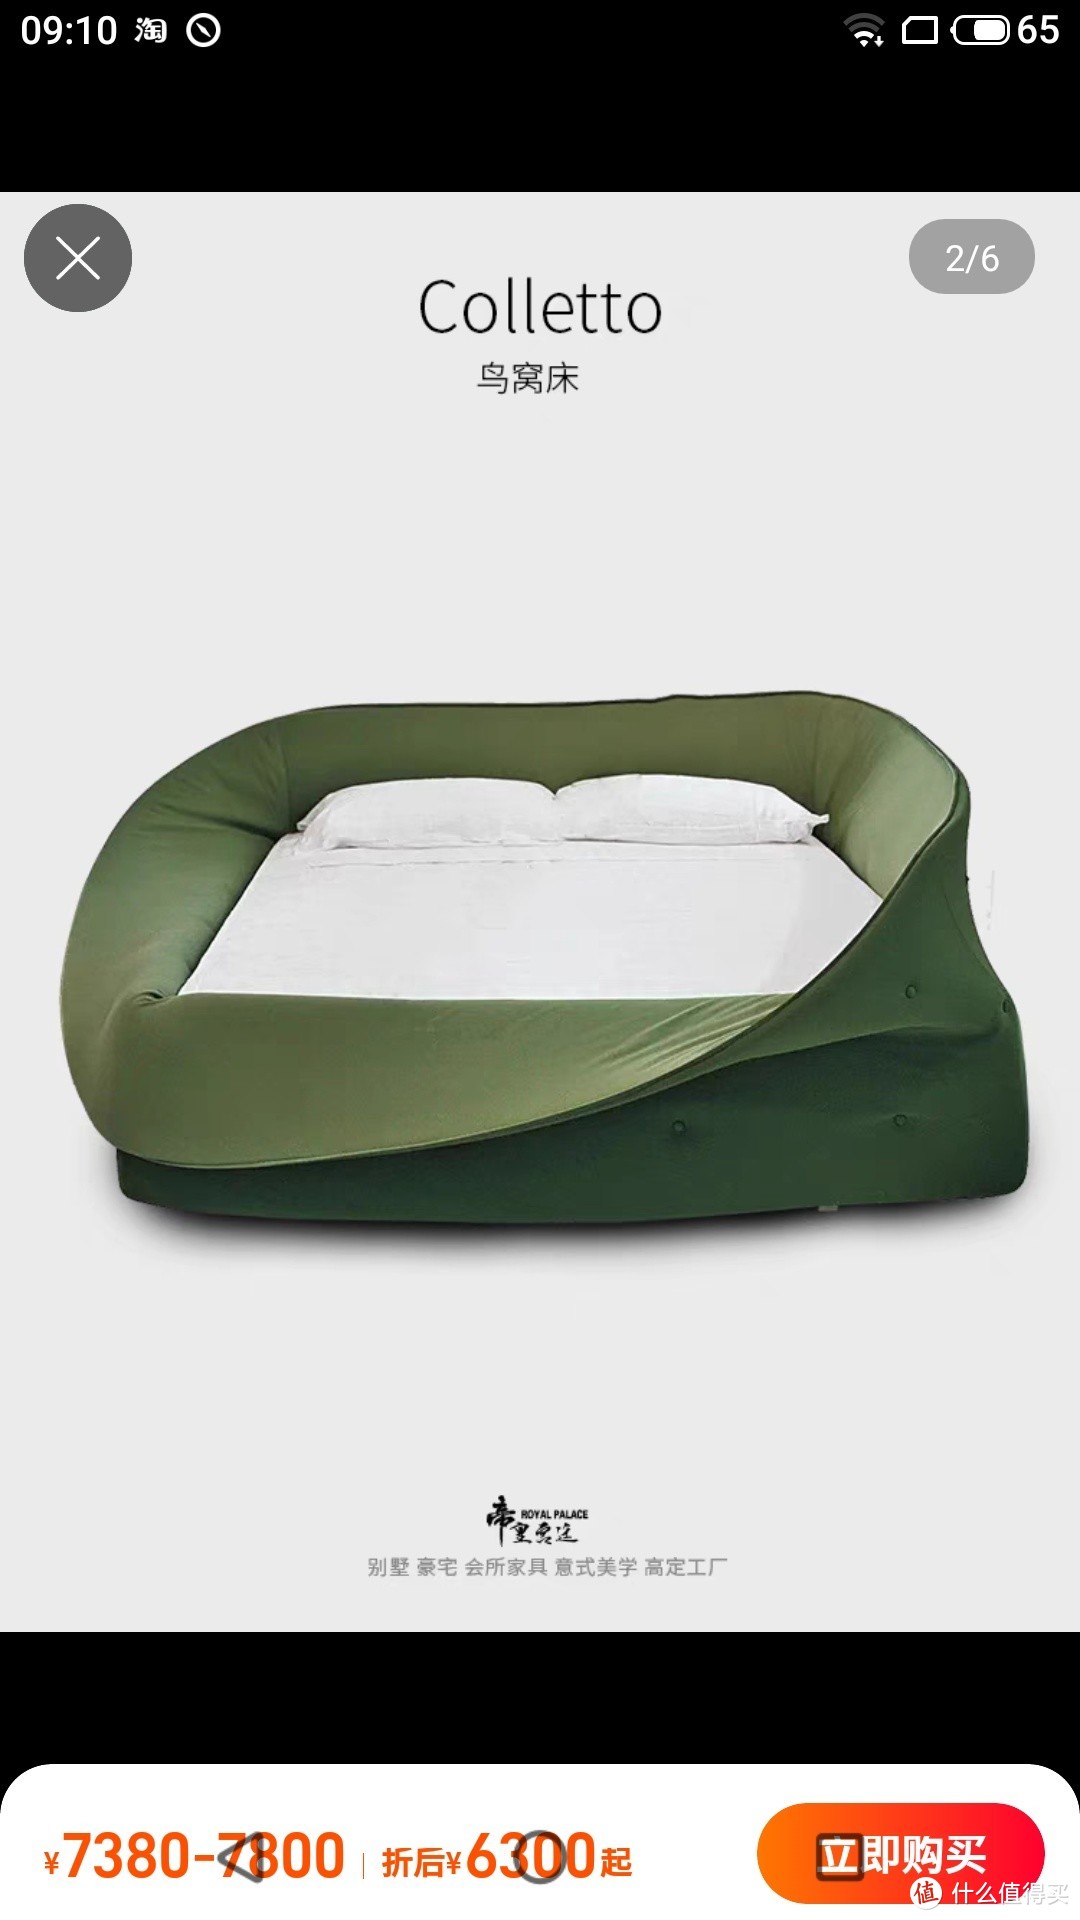 意大利lago colletto布艺床现代简约双人床创意网红二胎鸟窝大床